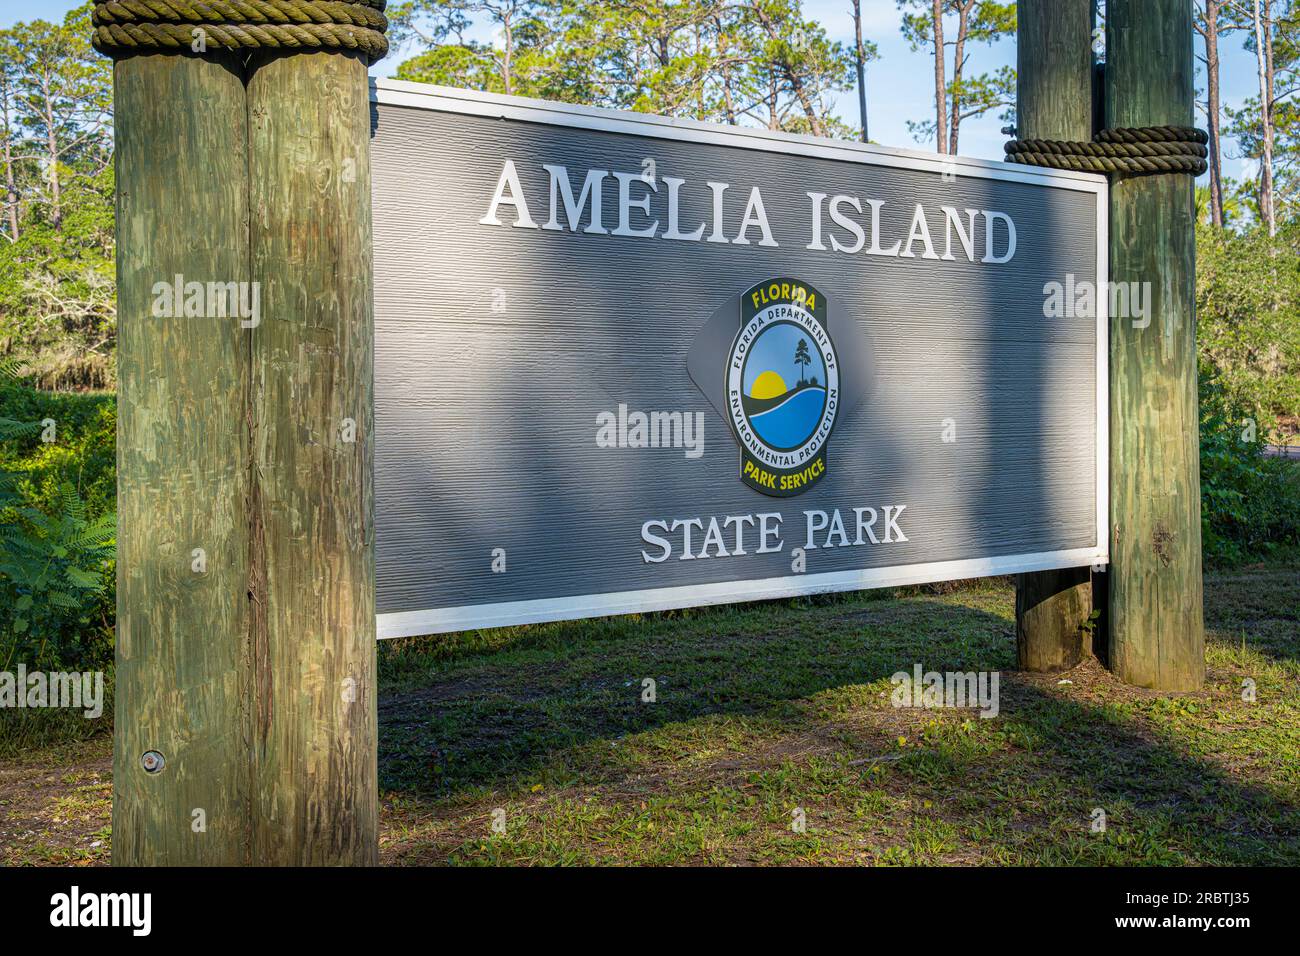 Entrée au parc d'État d'Amelia Island sur la pointe sud de l'île d'Amelia dans le nord-est de la Floride. (ÉTATS-UNIS) Banque D'Images